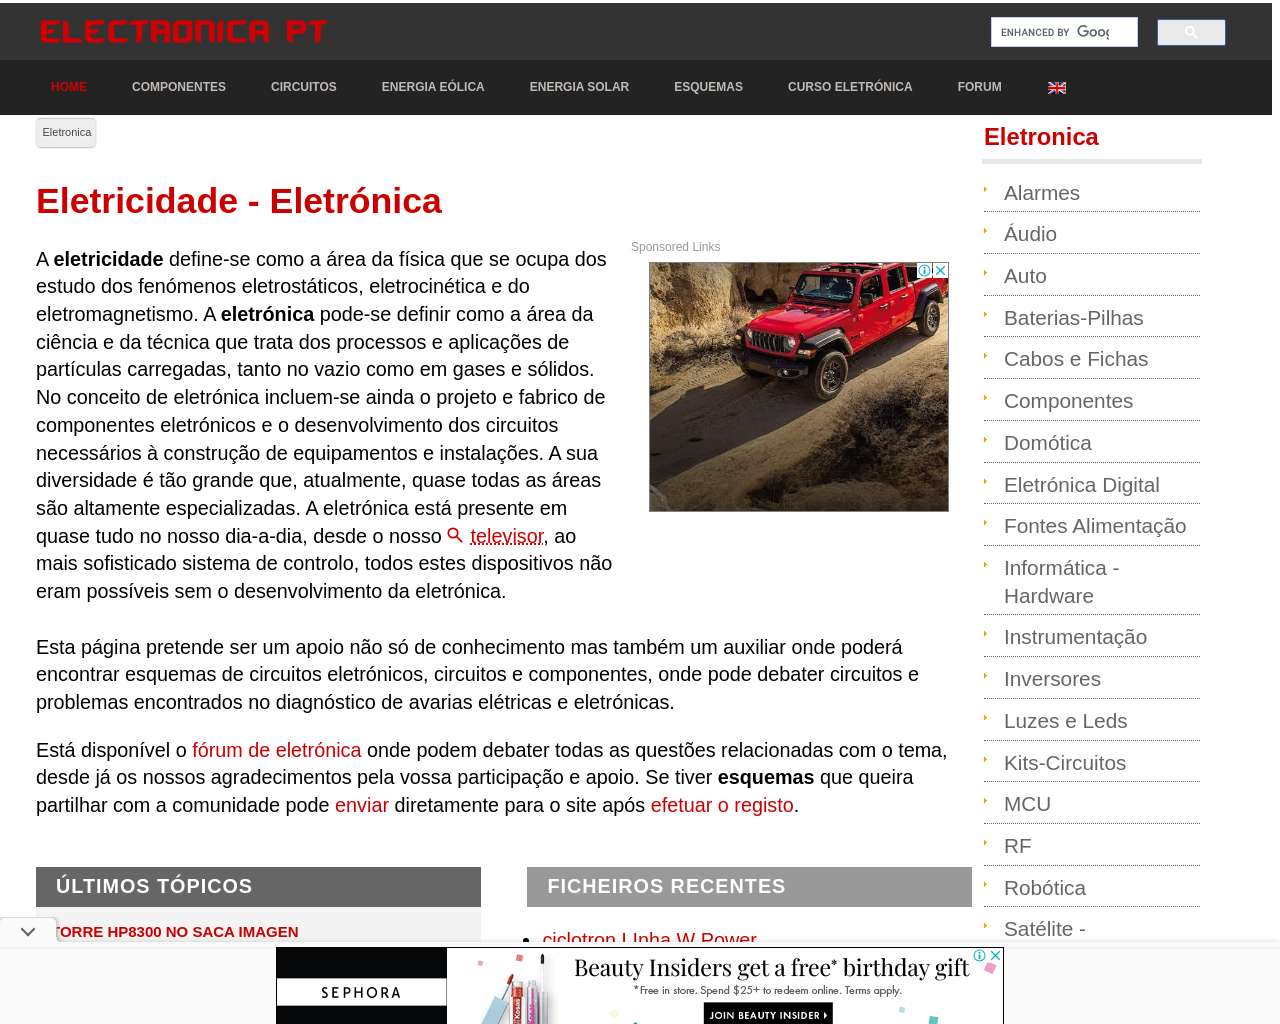 electronica-pt.com